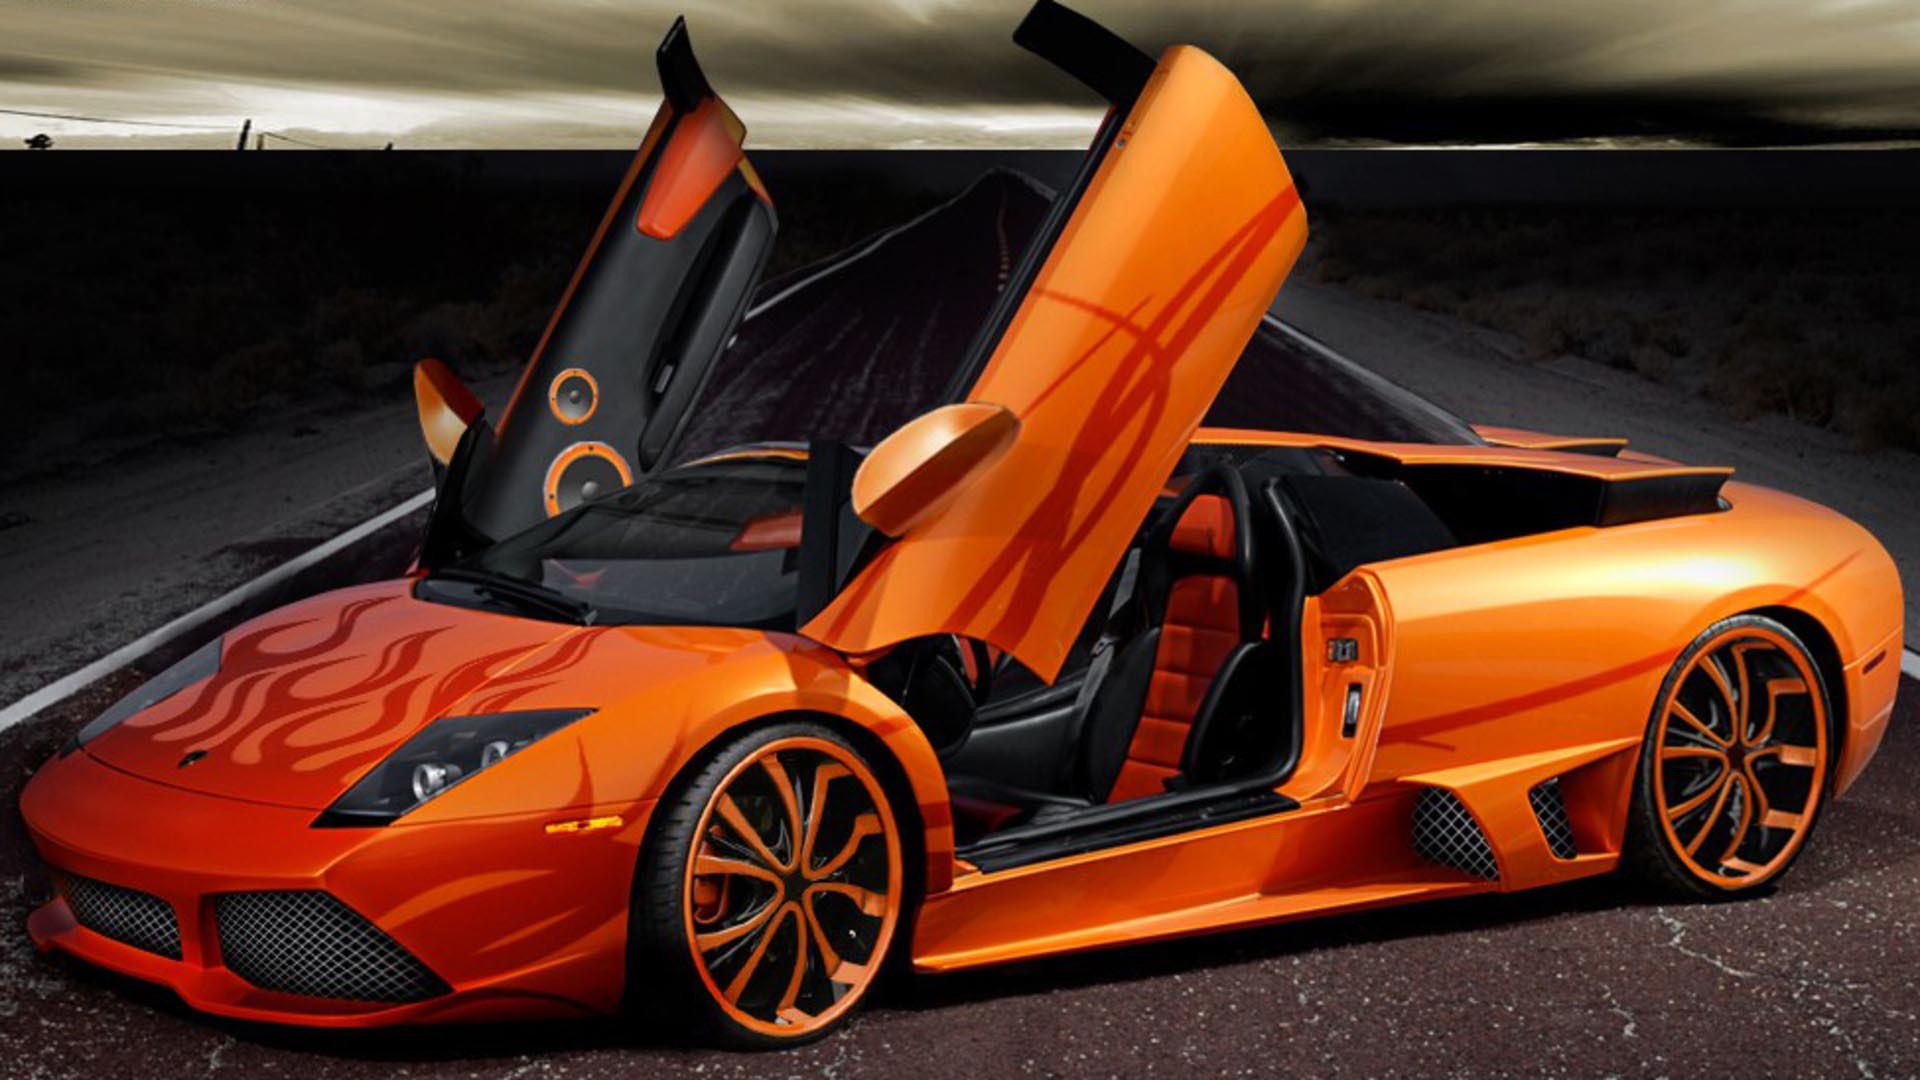 Lamborghini Wallpapers, Vehicles Wallpapers là những bộ sưu tập hình nền xe hơi đa dạng và đẹp nhất. Bạn sẽ được khám phá những chiếc xe đảm bảo sức mạnh, tốc độ và sự nổi tiếng như Lamborghini và nhiều loại xe hơi khác. Hãy cùng nhìn lại những hình ảnh xe hơi đẹp tuyệt vời này để tạo động lực cho ngày mới.